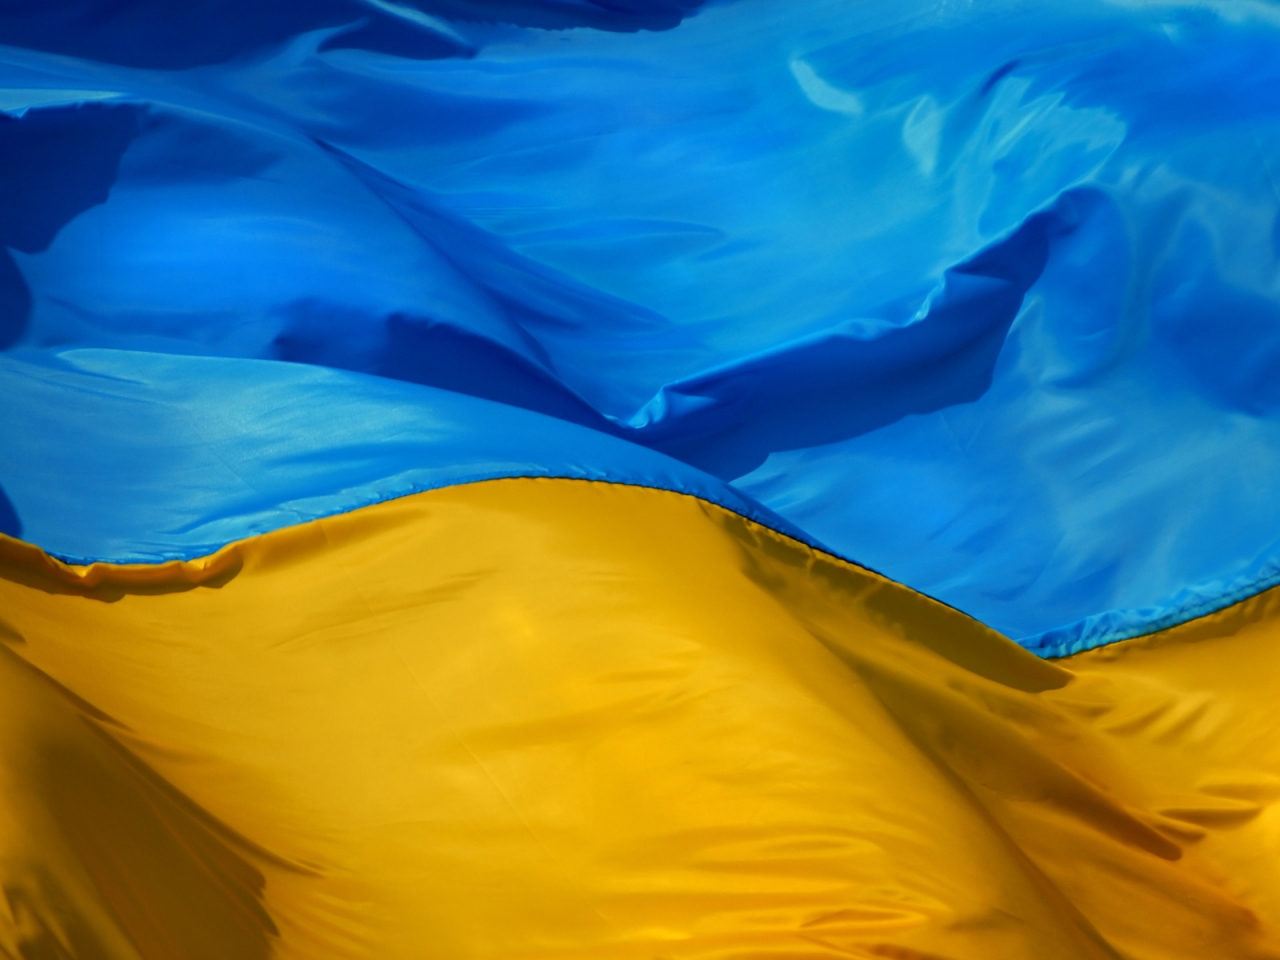 Ukraine Flag for 1280 x 960 resolution